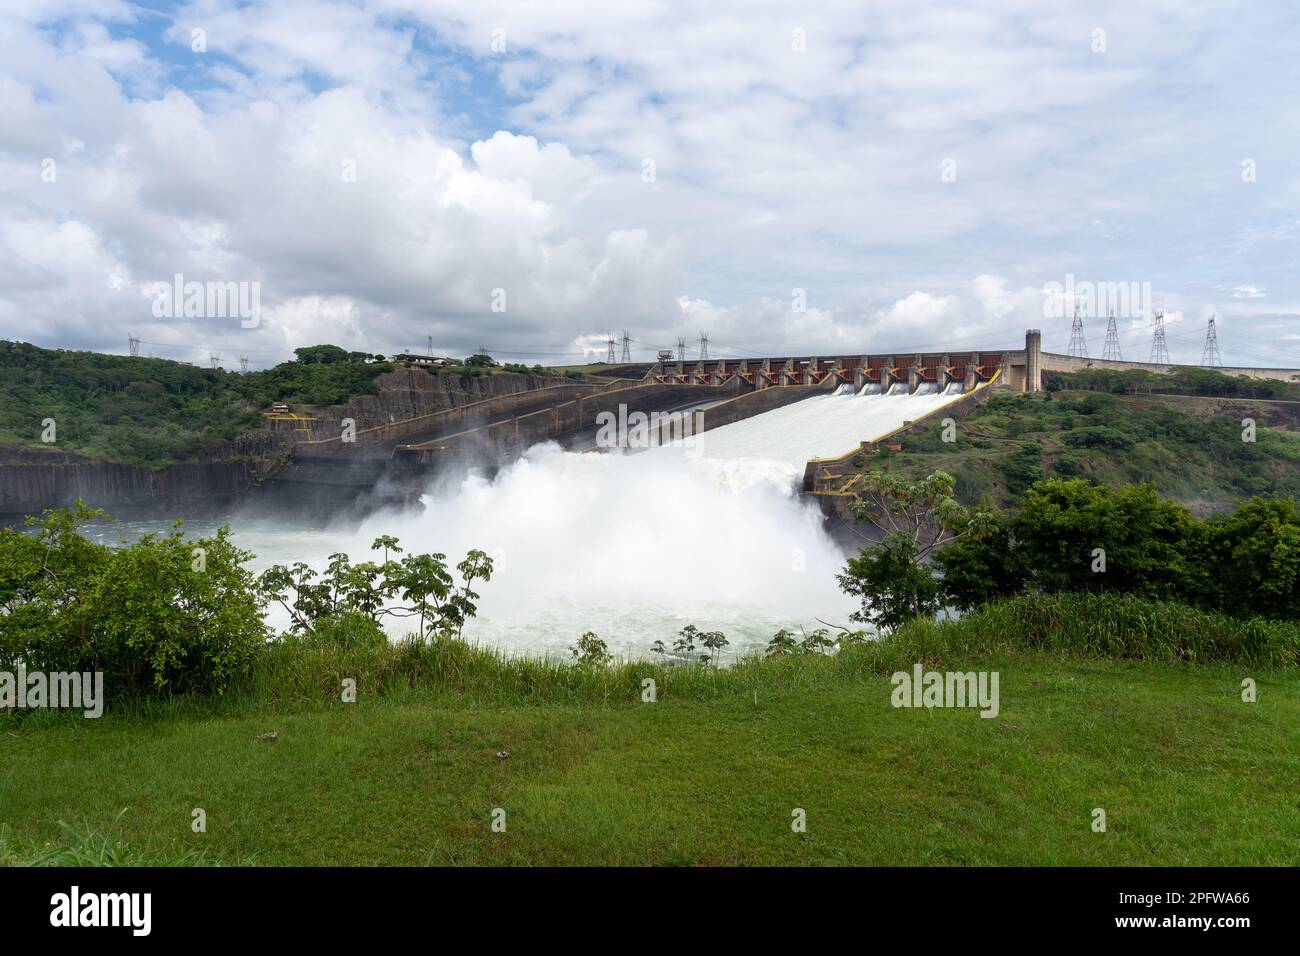 La diga di Itaipu si trova nel centro visitatori vicino a Foz do iguacu, brasile. Foto Stock